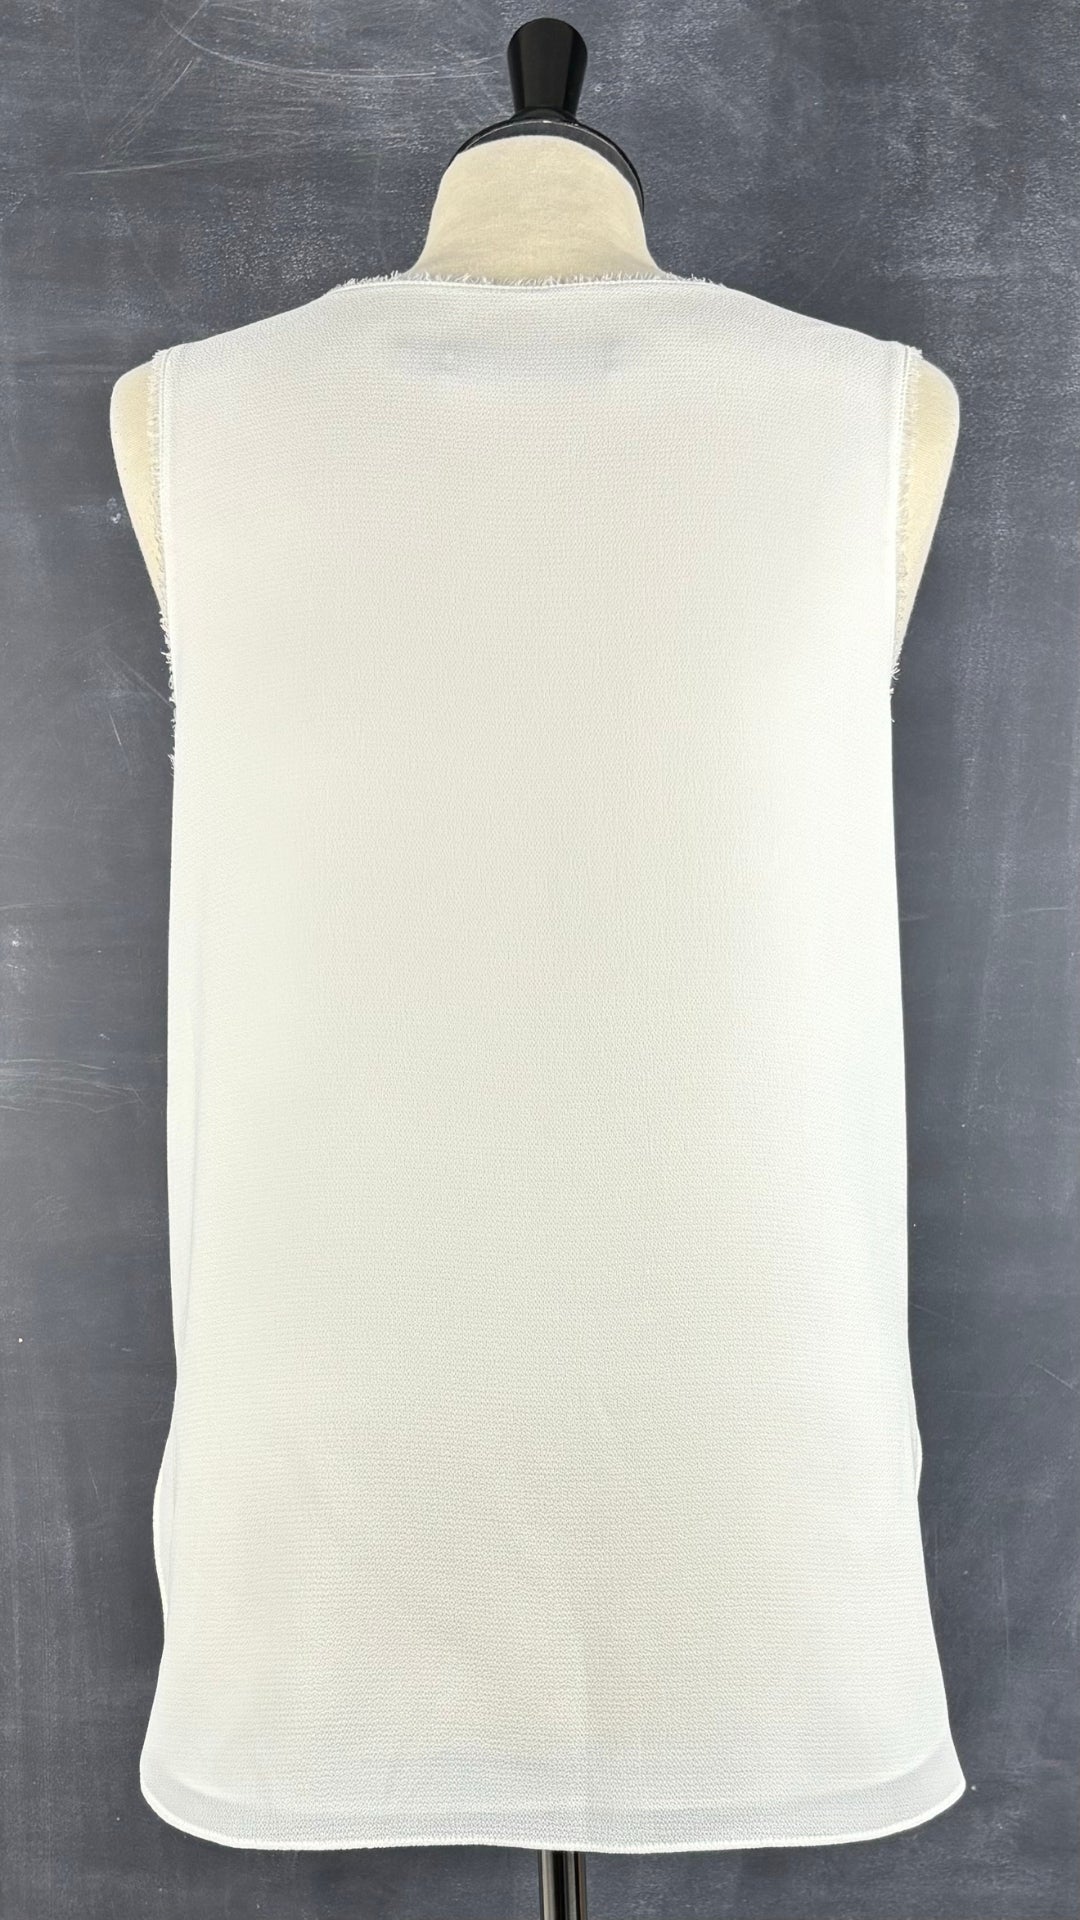 Camisole texturée blanc crème Iris Setlakwe, taille 6. Vue de dos.